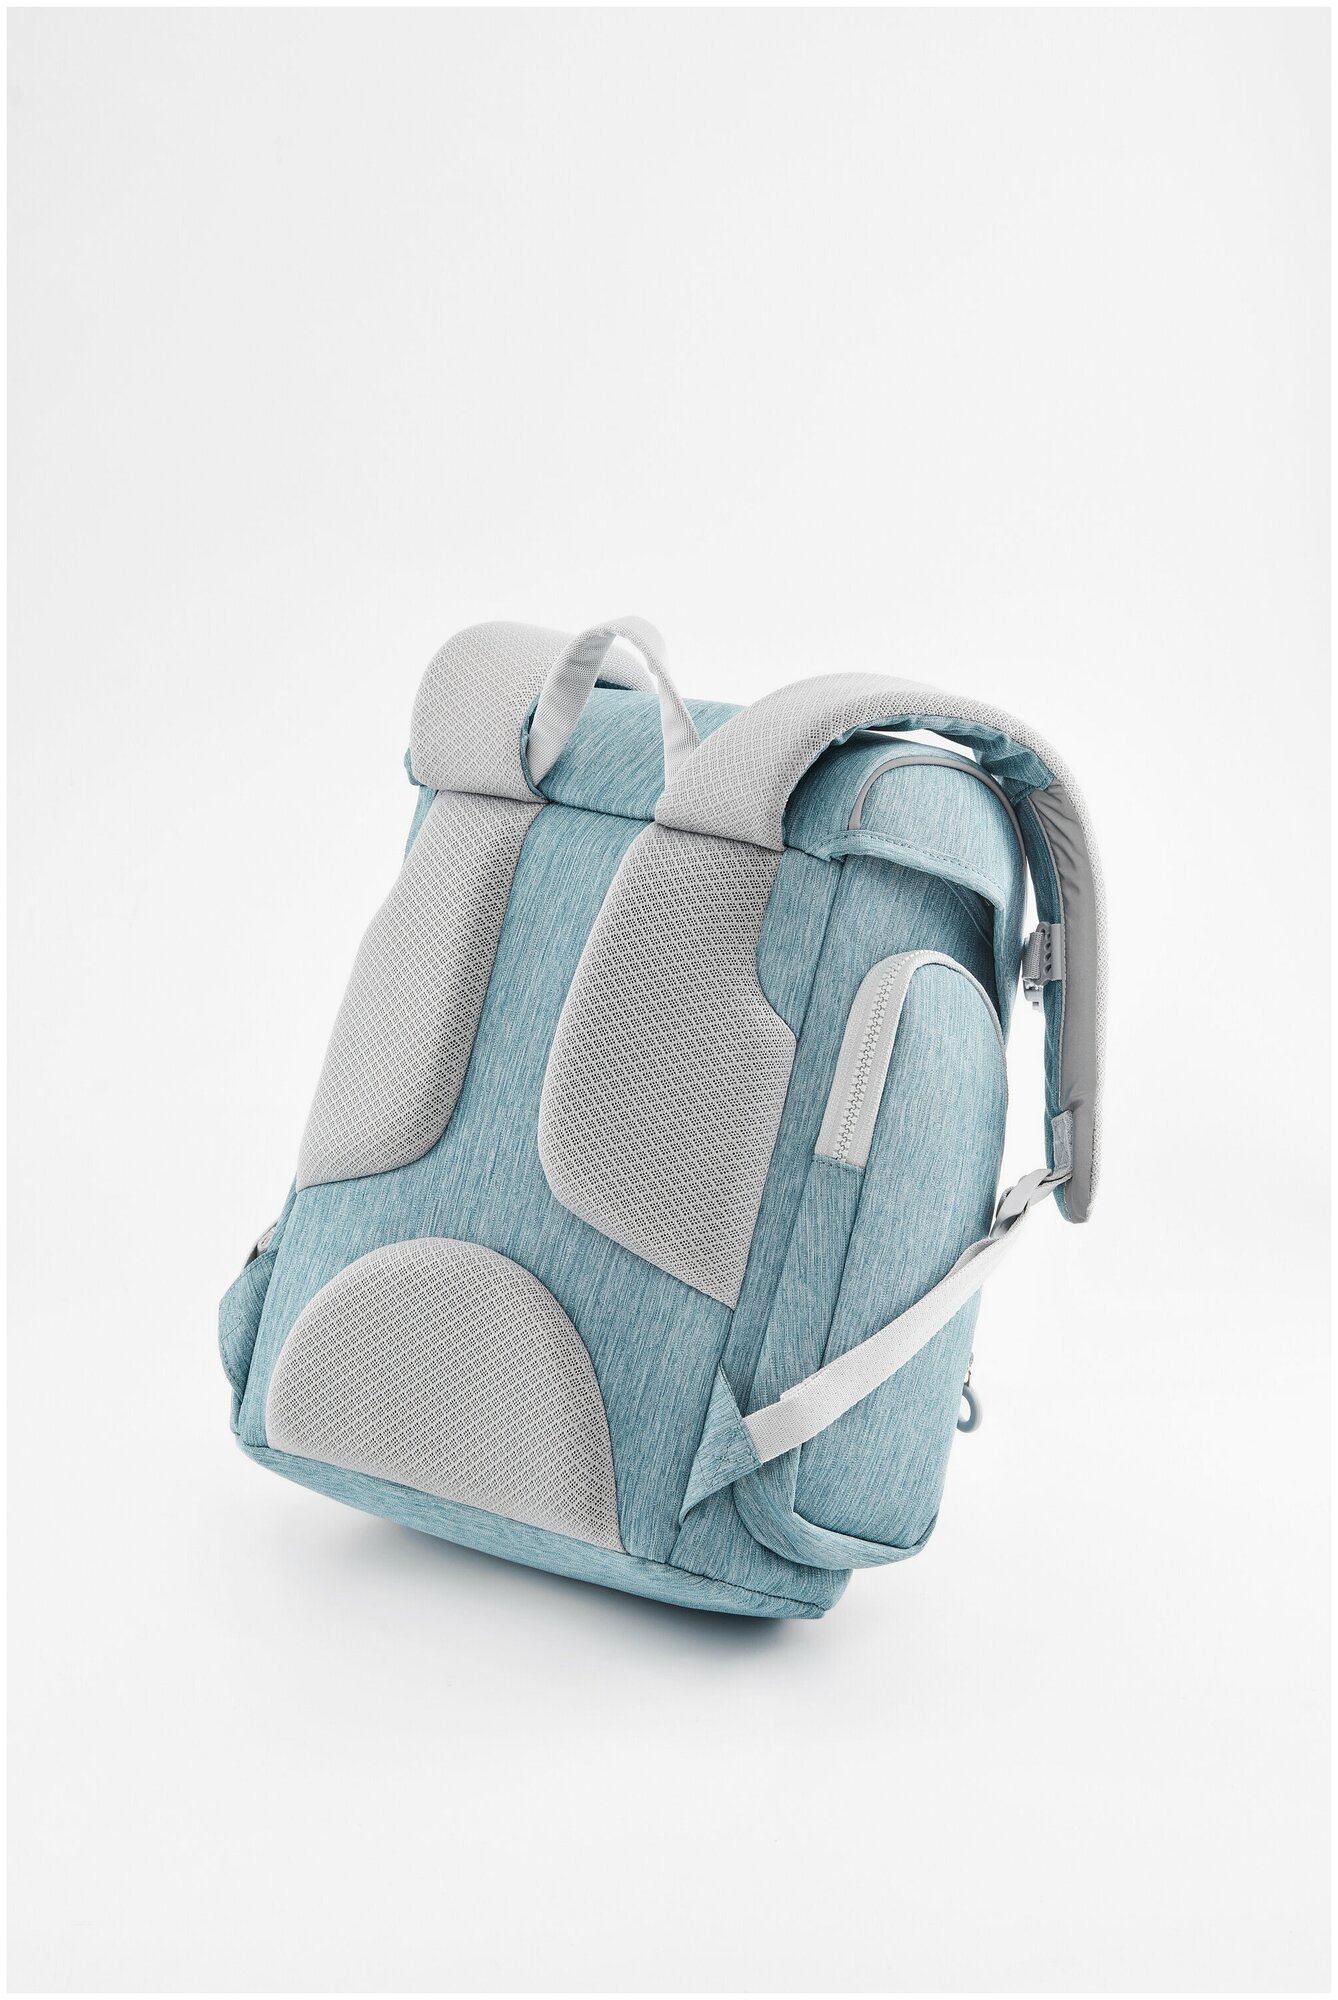 Рюкзак (школьная сумка) NINETYGO smart school bag голубой - фото №8